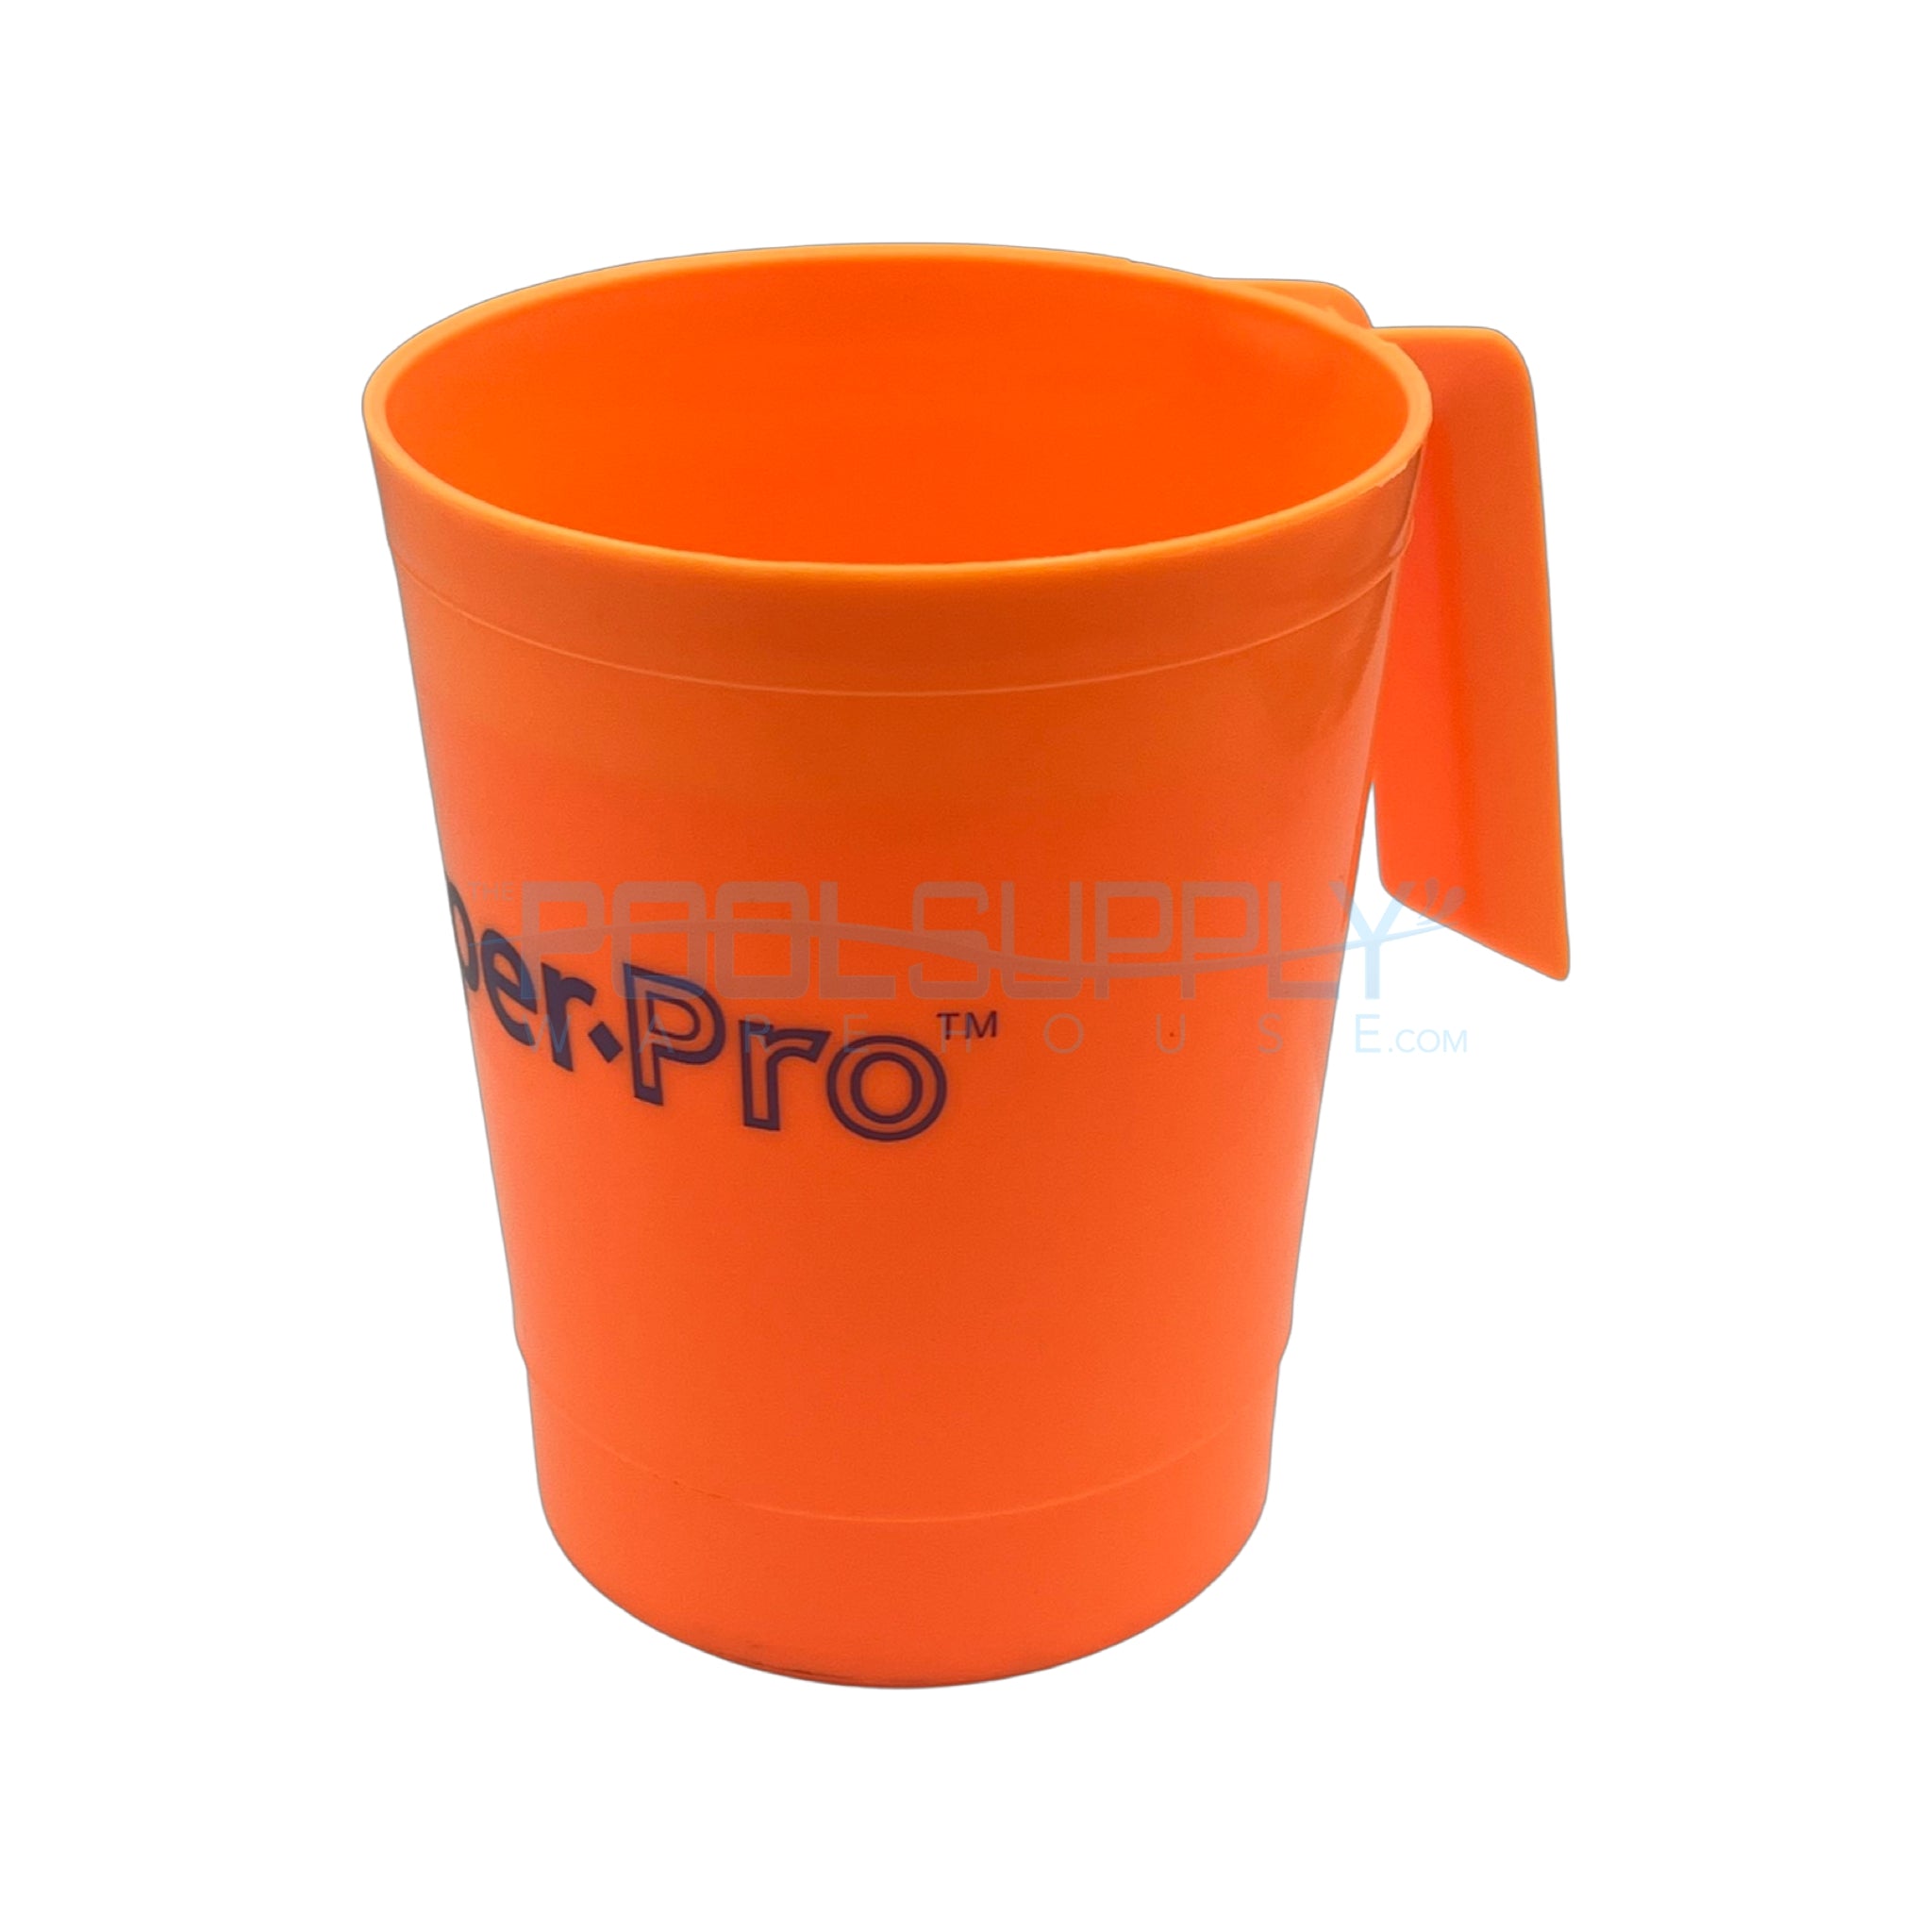 Super-Pro Orange DE Scoop - 25600-006-000